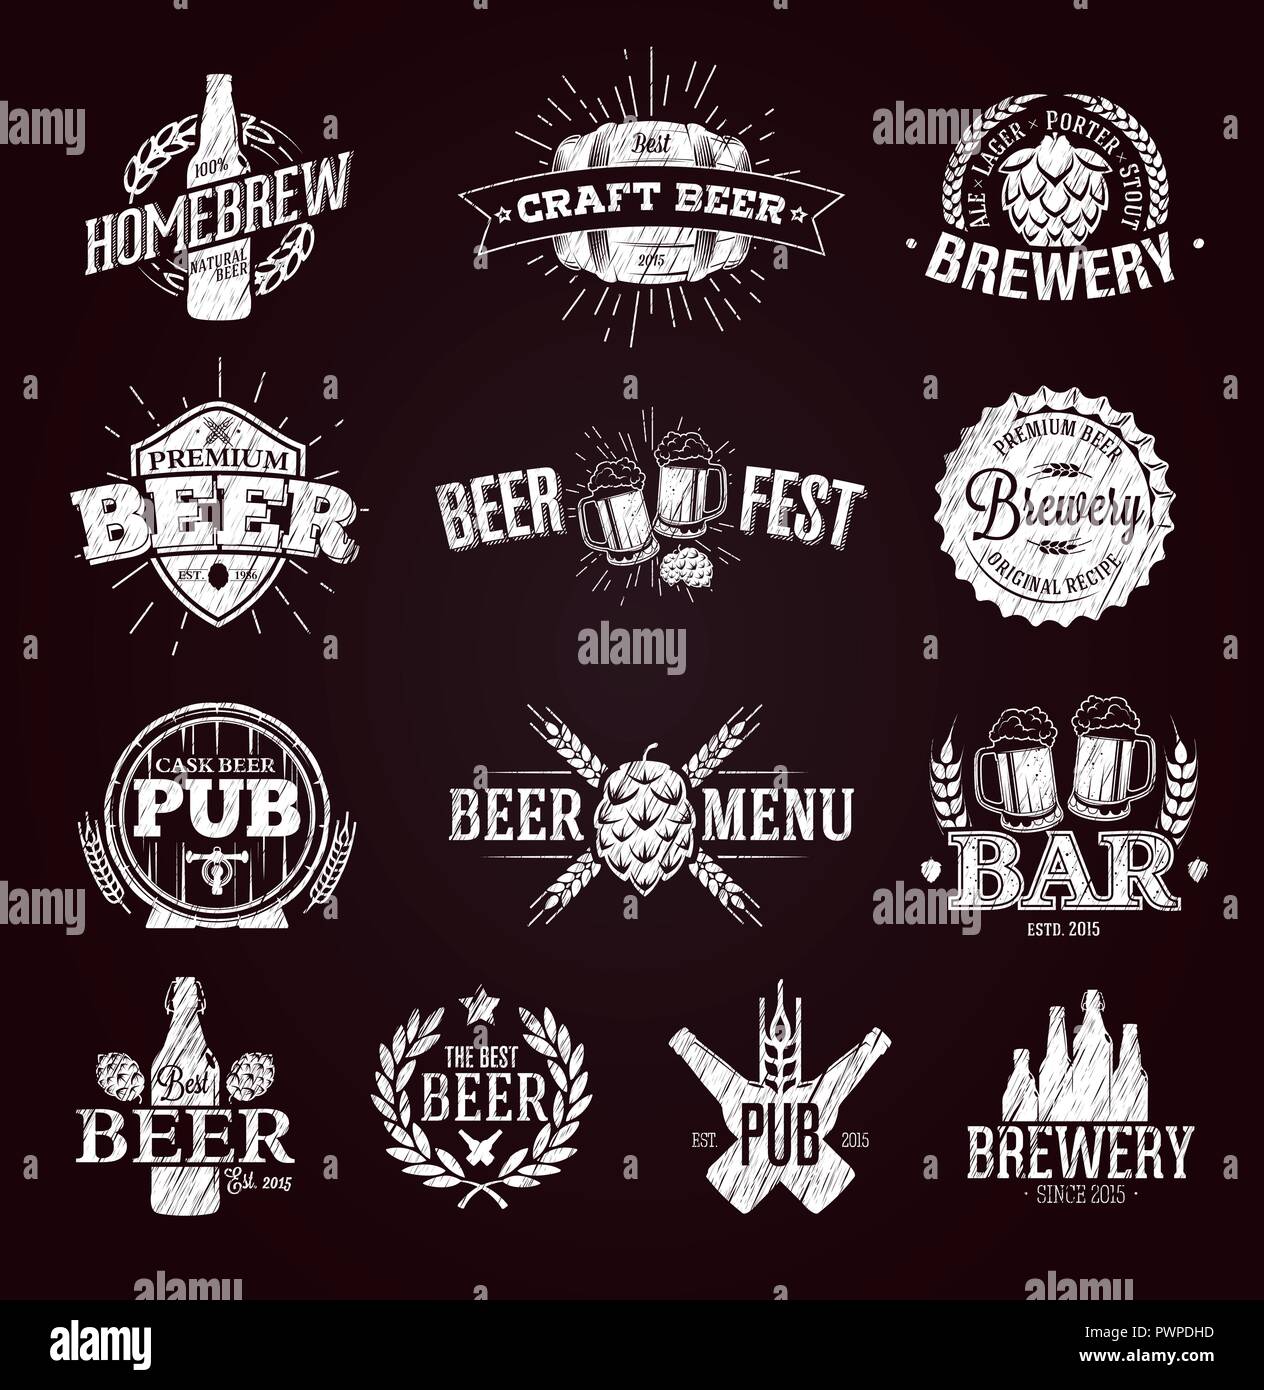 Typografische Bier Etiketten Und Logos Mit Kreide Vorlage Fur Ihr Logo Design Gezeichnet Stock Vektorgrafik Alamy